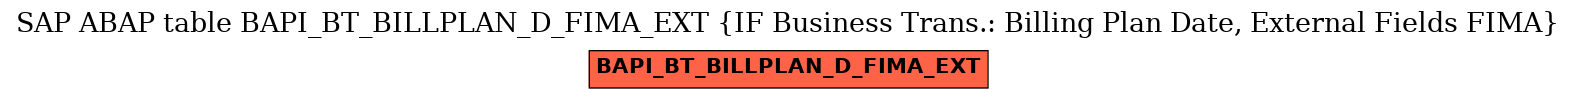 E-R Diagram for table BAPI_BT_BILLPLAN_D_FIMA_EXT (IF Business Trans.: Billing Plan Date, External Fields FIMA)